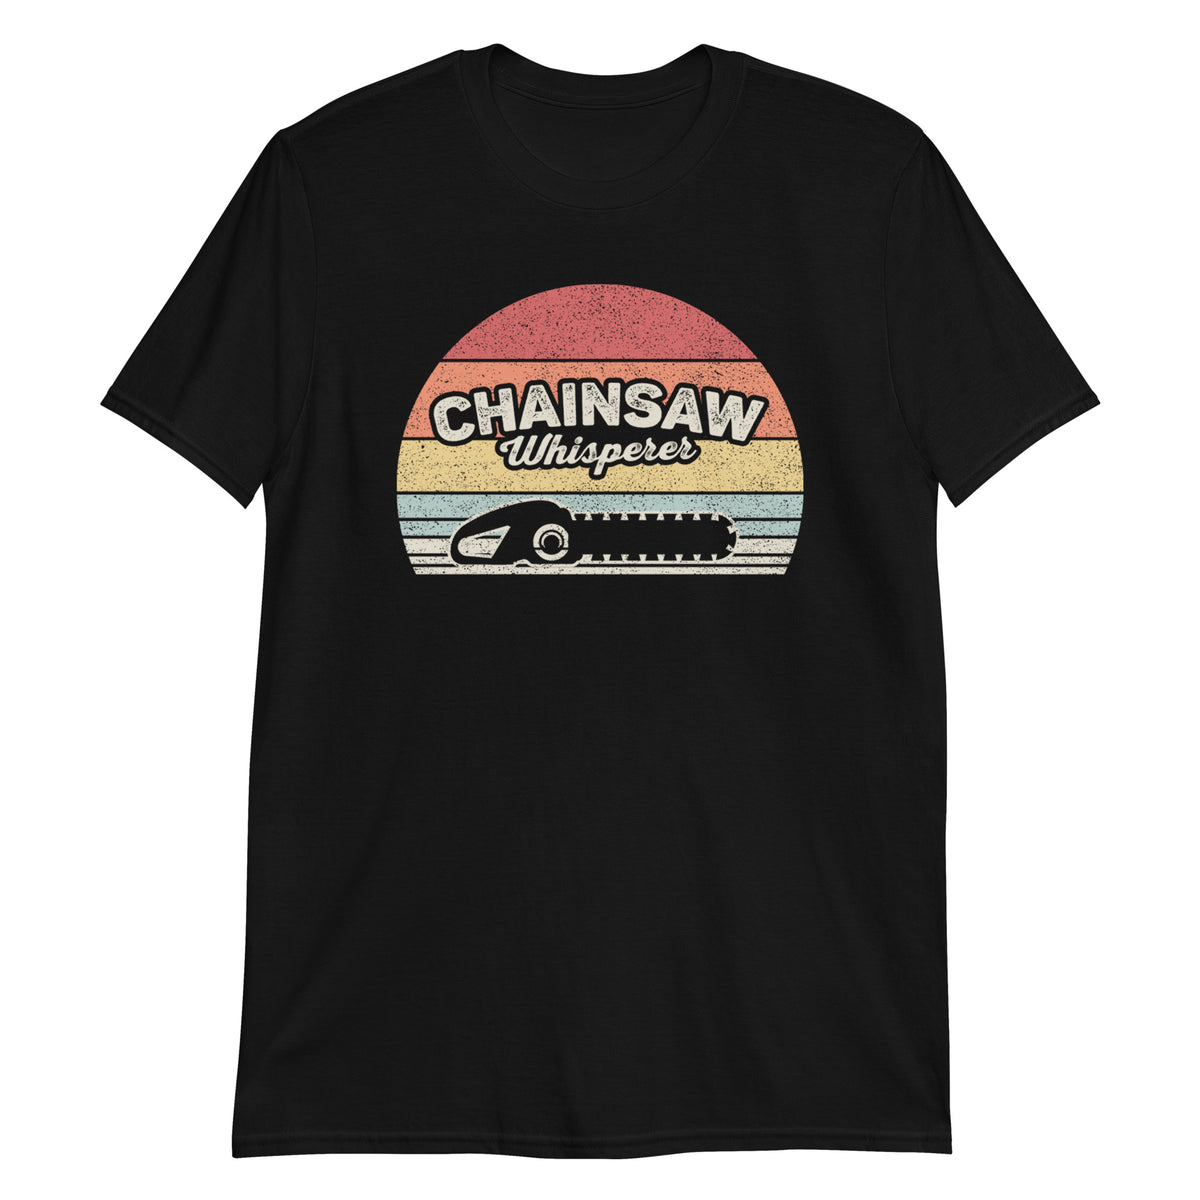 Chainsaw Whisperer Cool Lumberjack Arborist Logger Funny Vintage T-Shirt